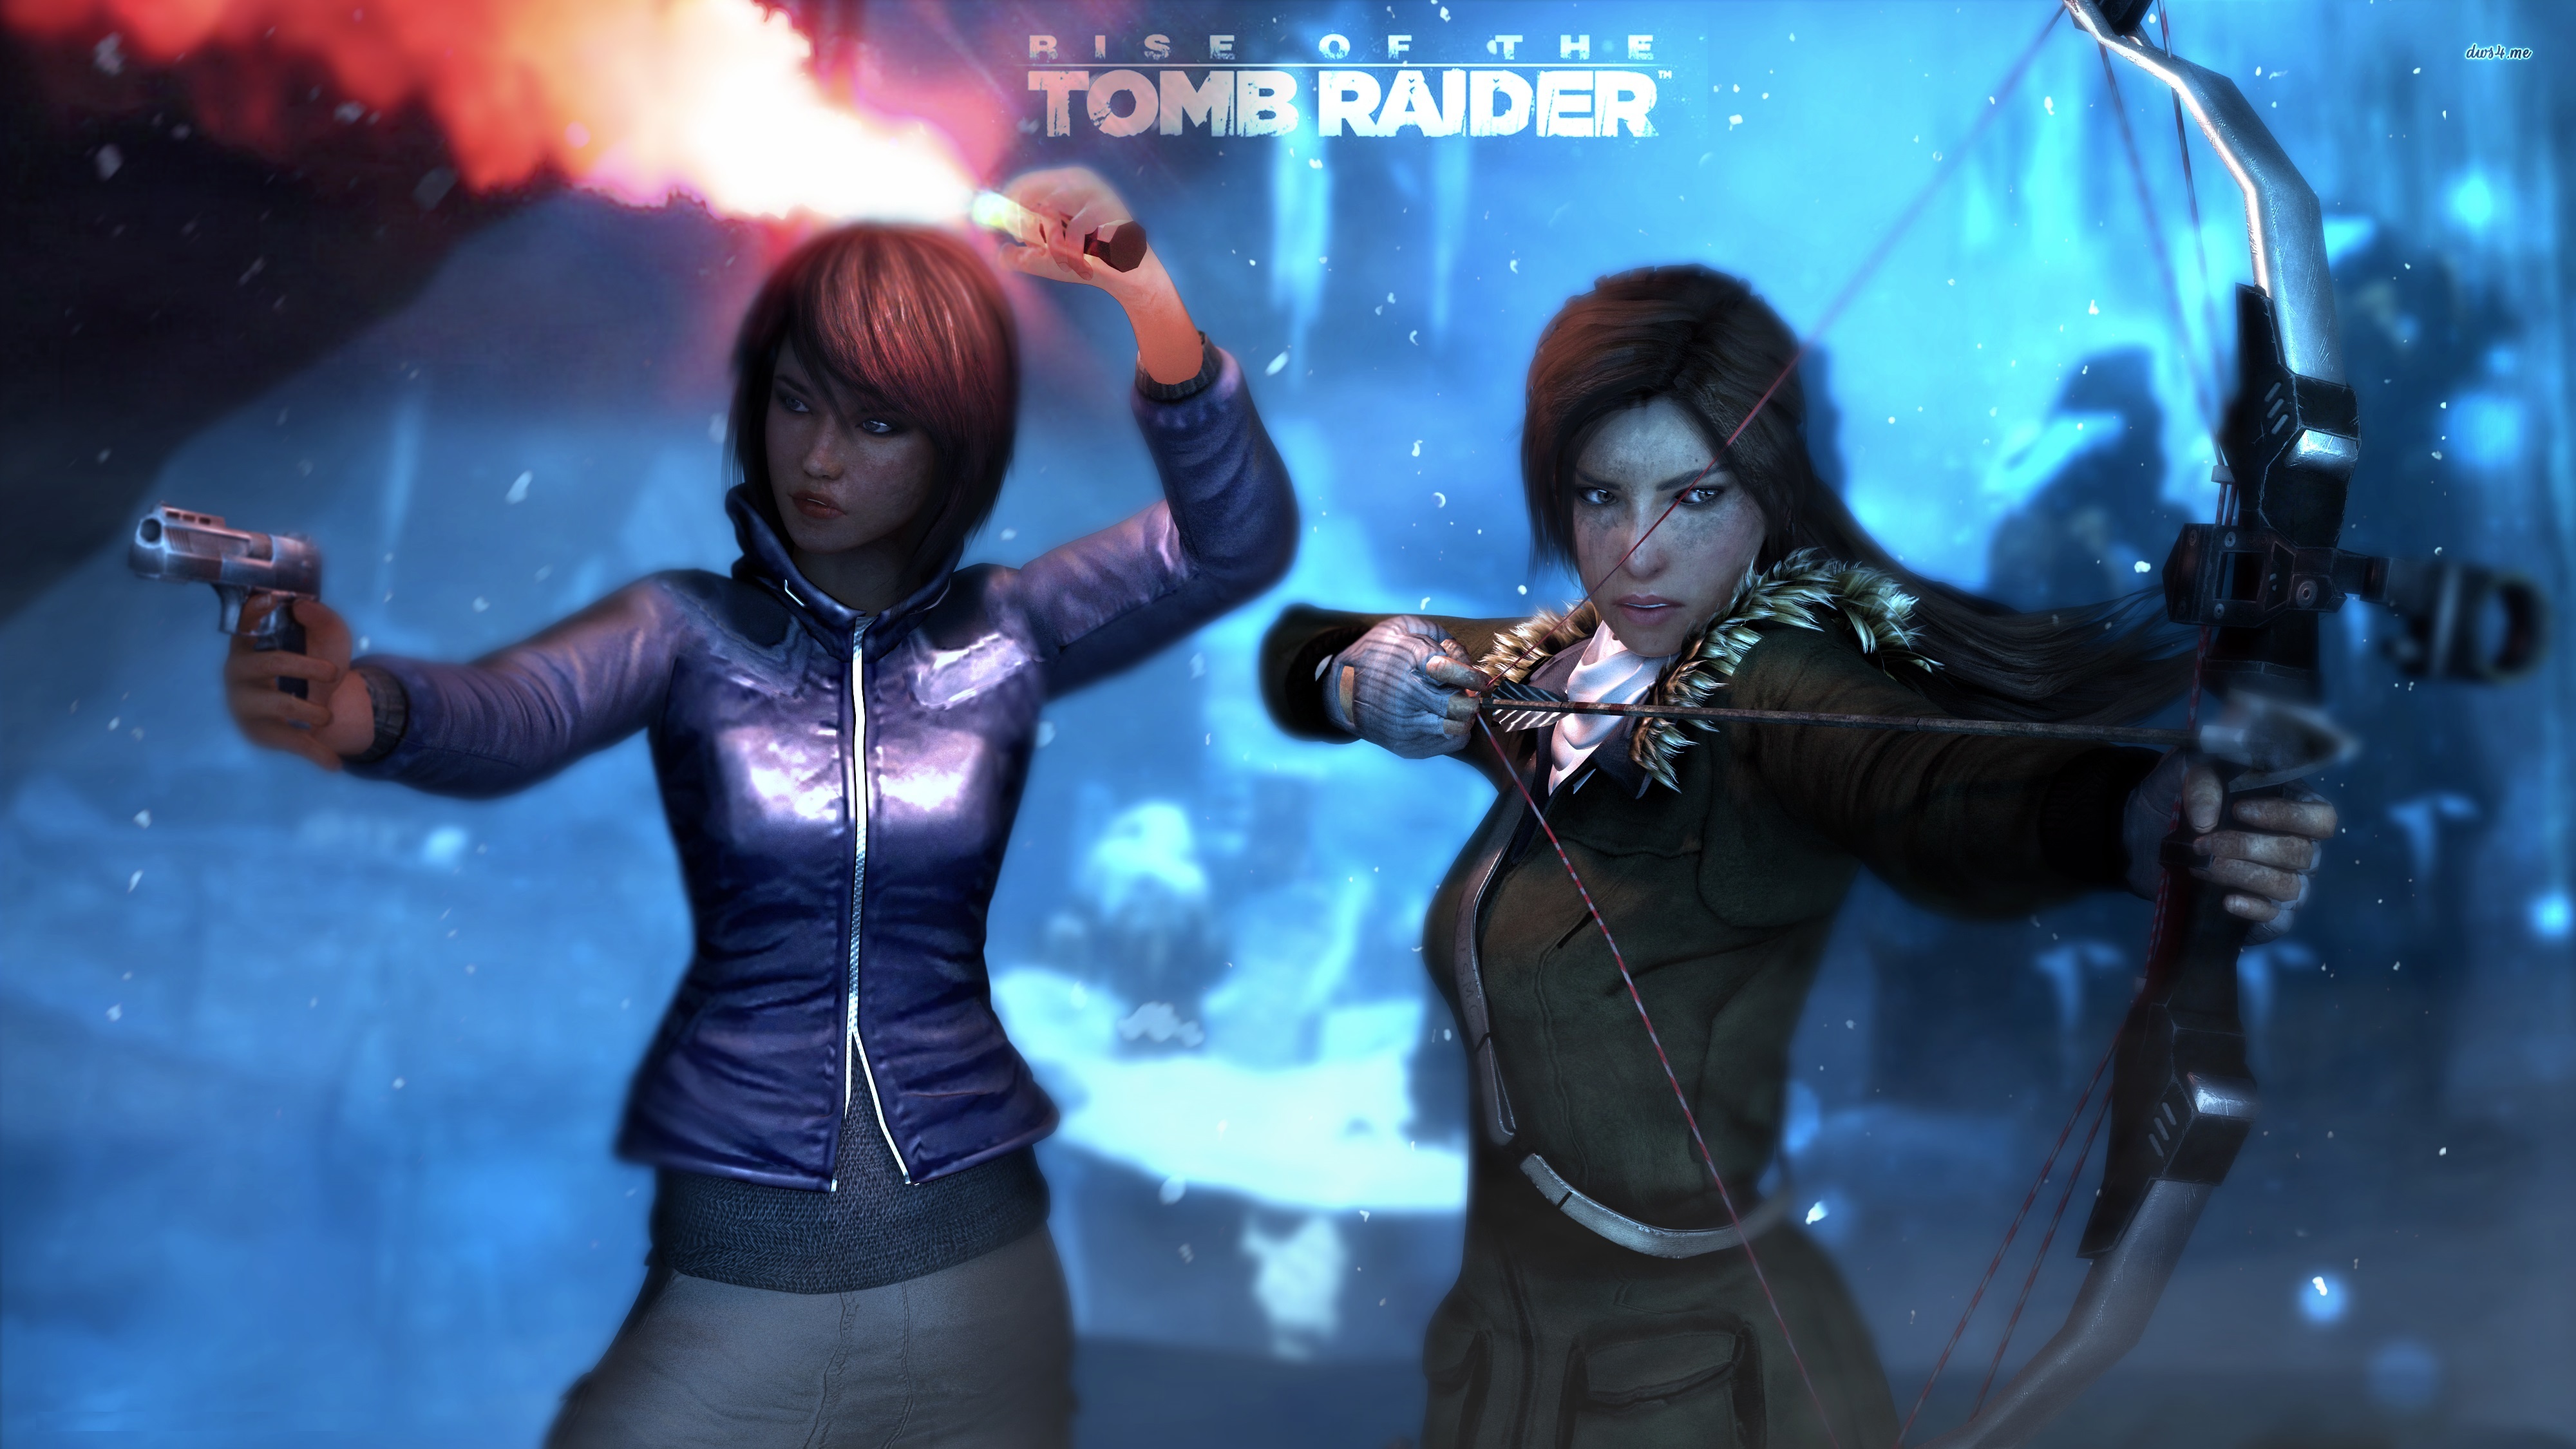 Bilder von Rise of the Tomb Raider Bogenschütze Lara Croft Samantha Nishimura Zwei junge frau computerspiel 4000x2250 2 Mädchens junge Frauen Spiele